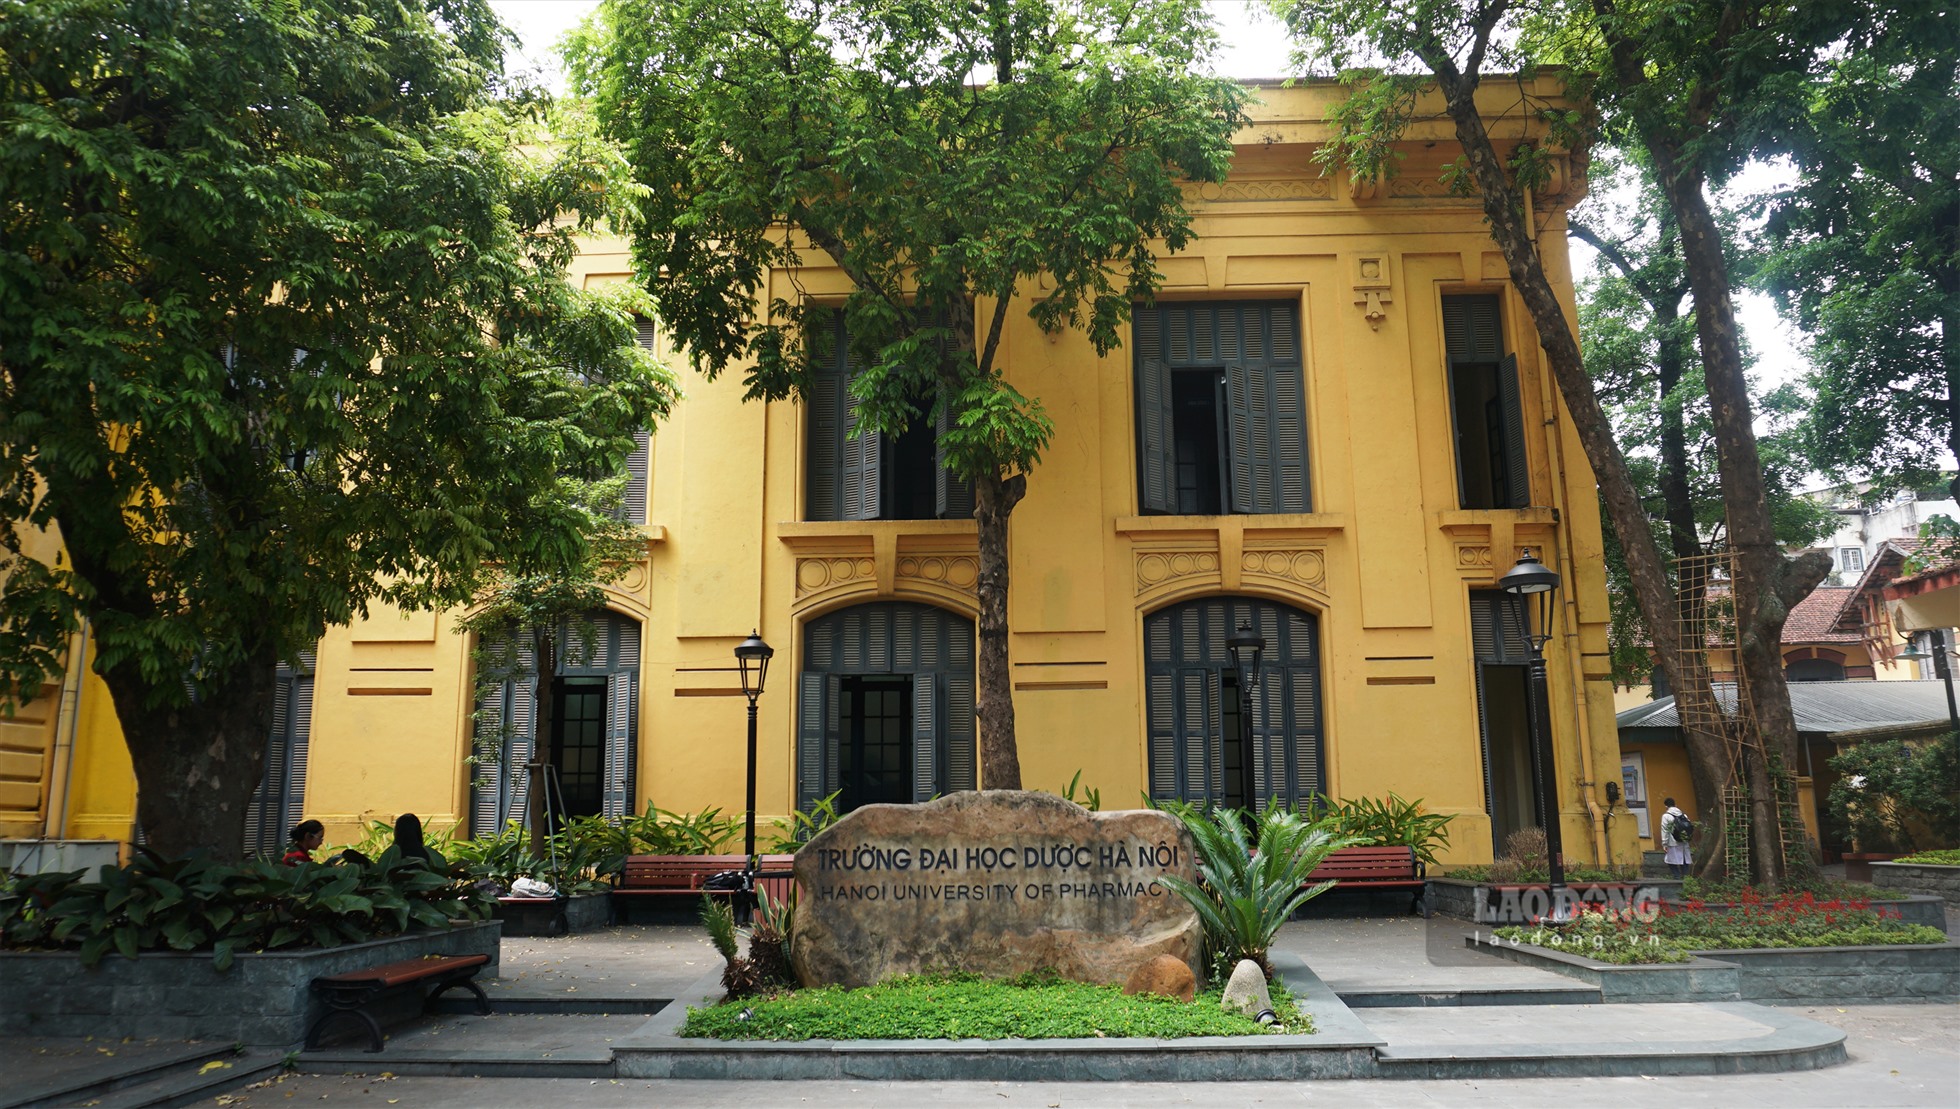 Trường Đại học Dược Hà Nội có tiền thân là khoa Dược thuộc Trường Y Dược khoa Đông Dương. Hiệu trưởng đầu tiên của trường là Bác sĩ Yersin - Giám đốc Viện Pasteur Nha Trang.